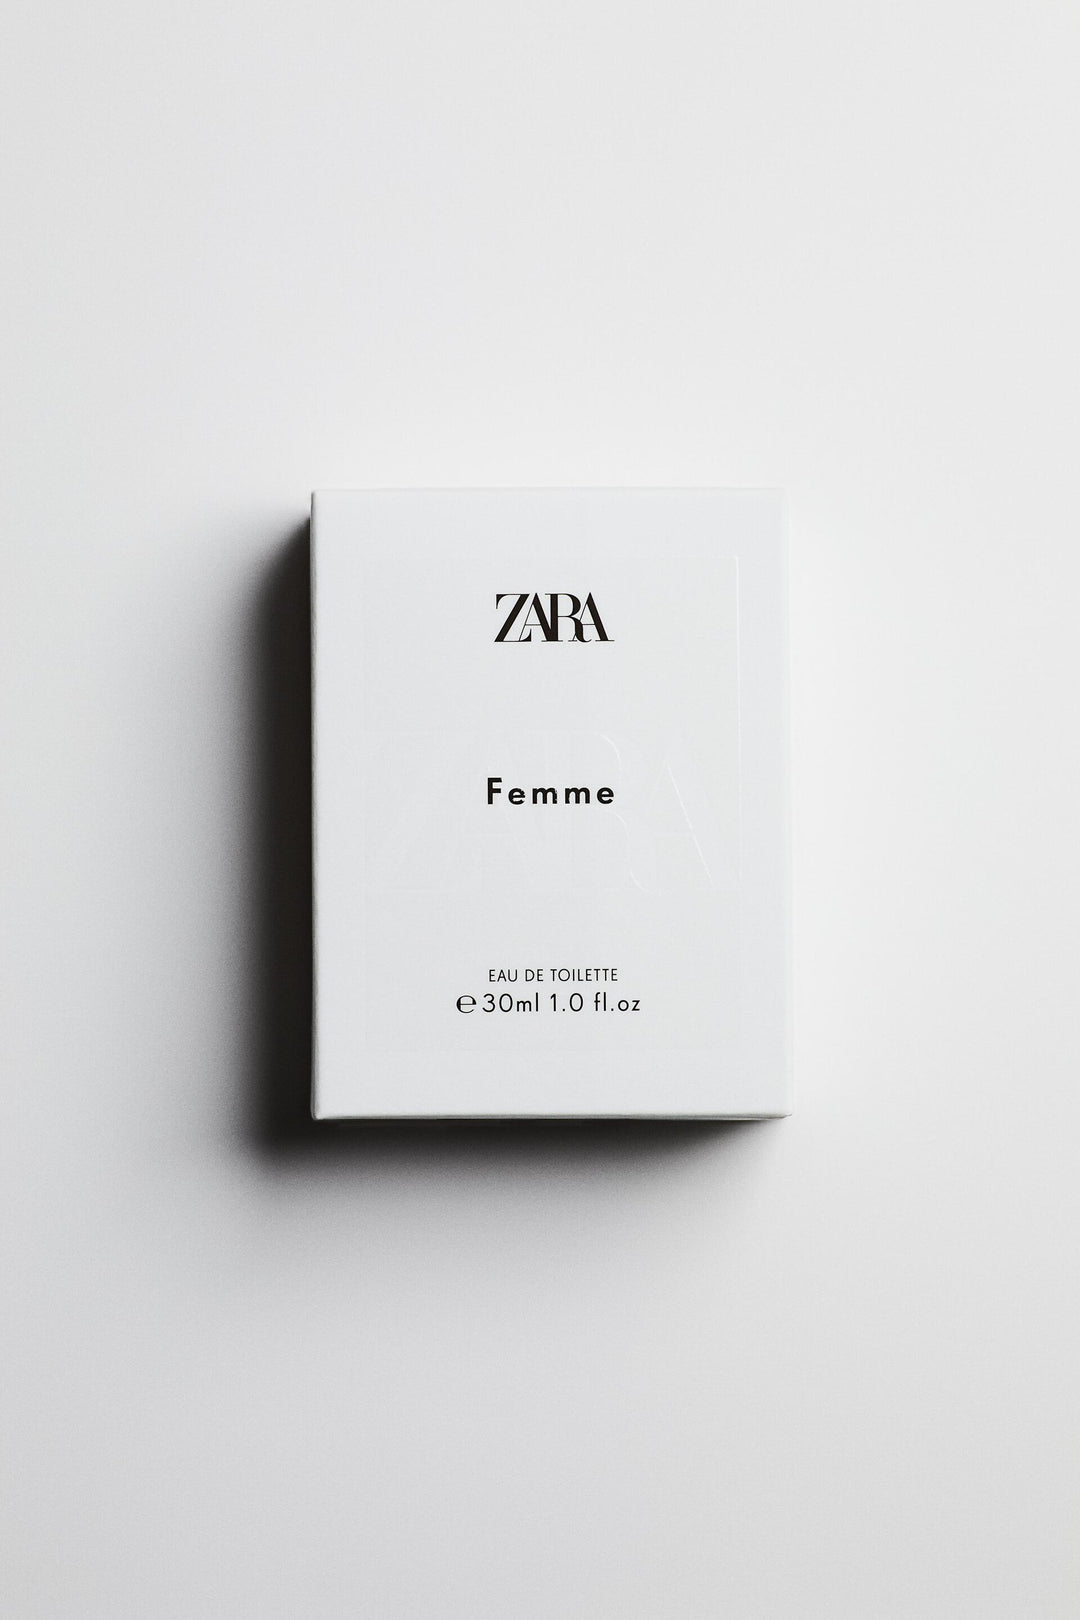 Eau De Toilette marque_Zara, genre_Femme Moudda Tunisie1